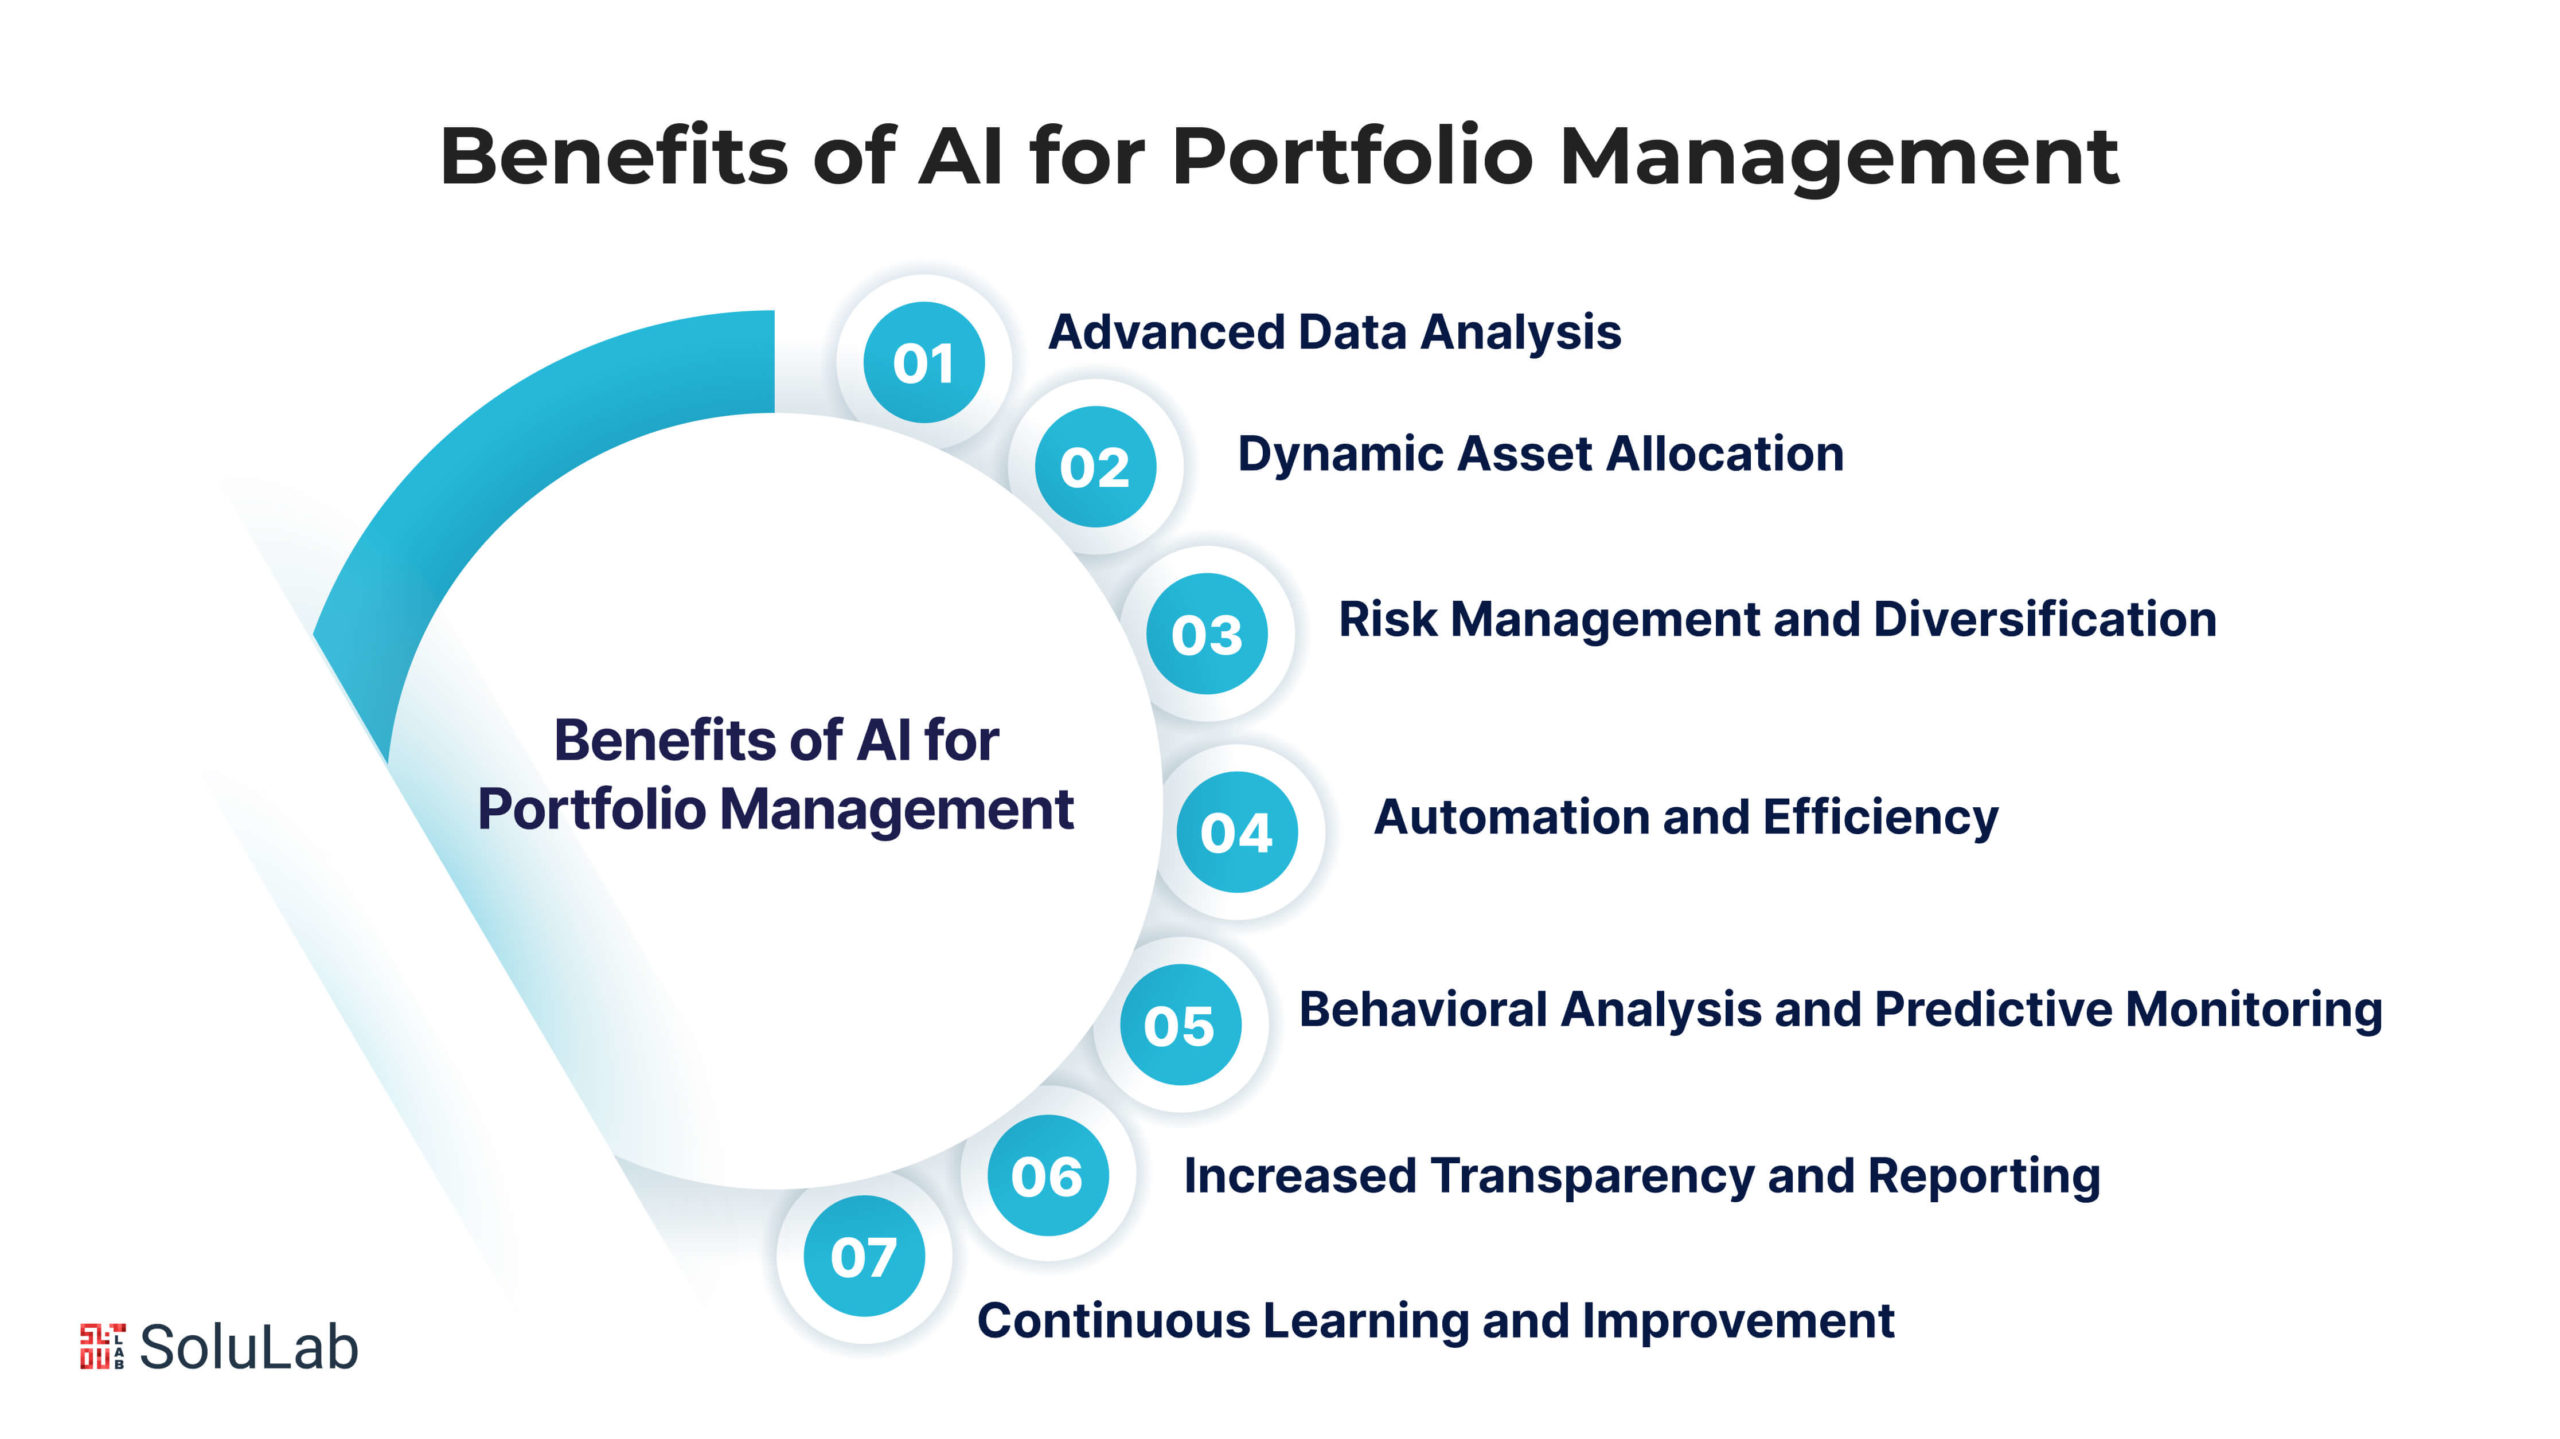 Benefits of AI for Portfolio Management